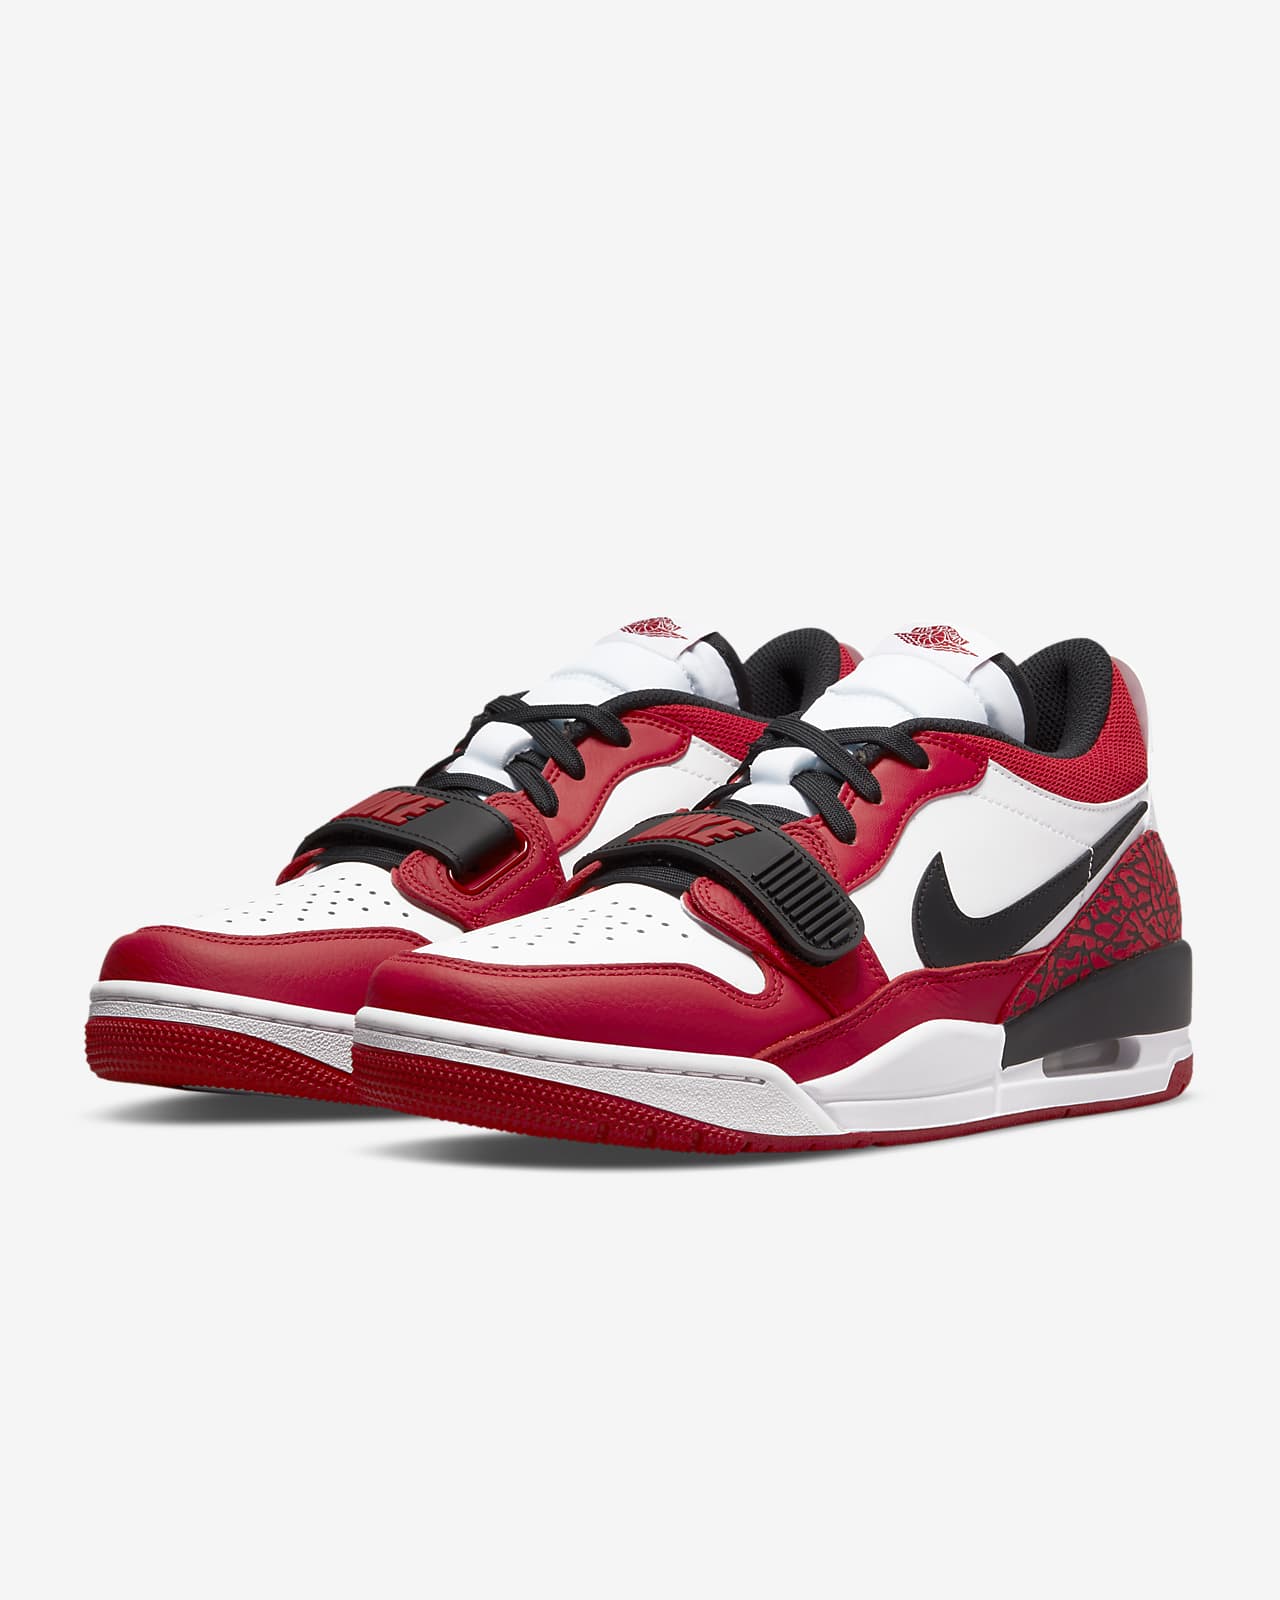 Air Jordan Legacy 312 Low Men's Shoes. Nike SA